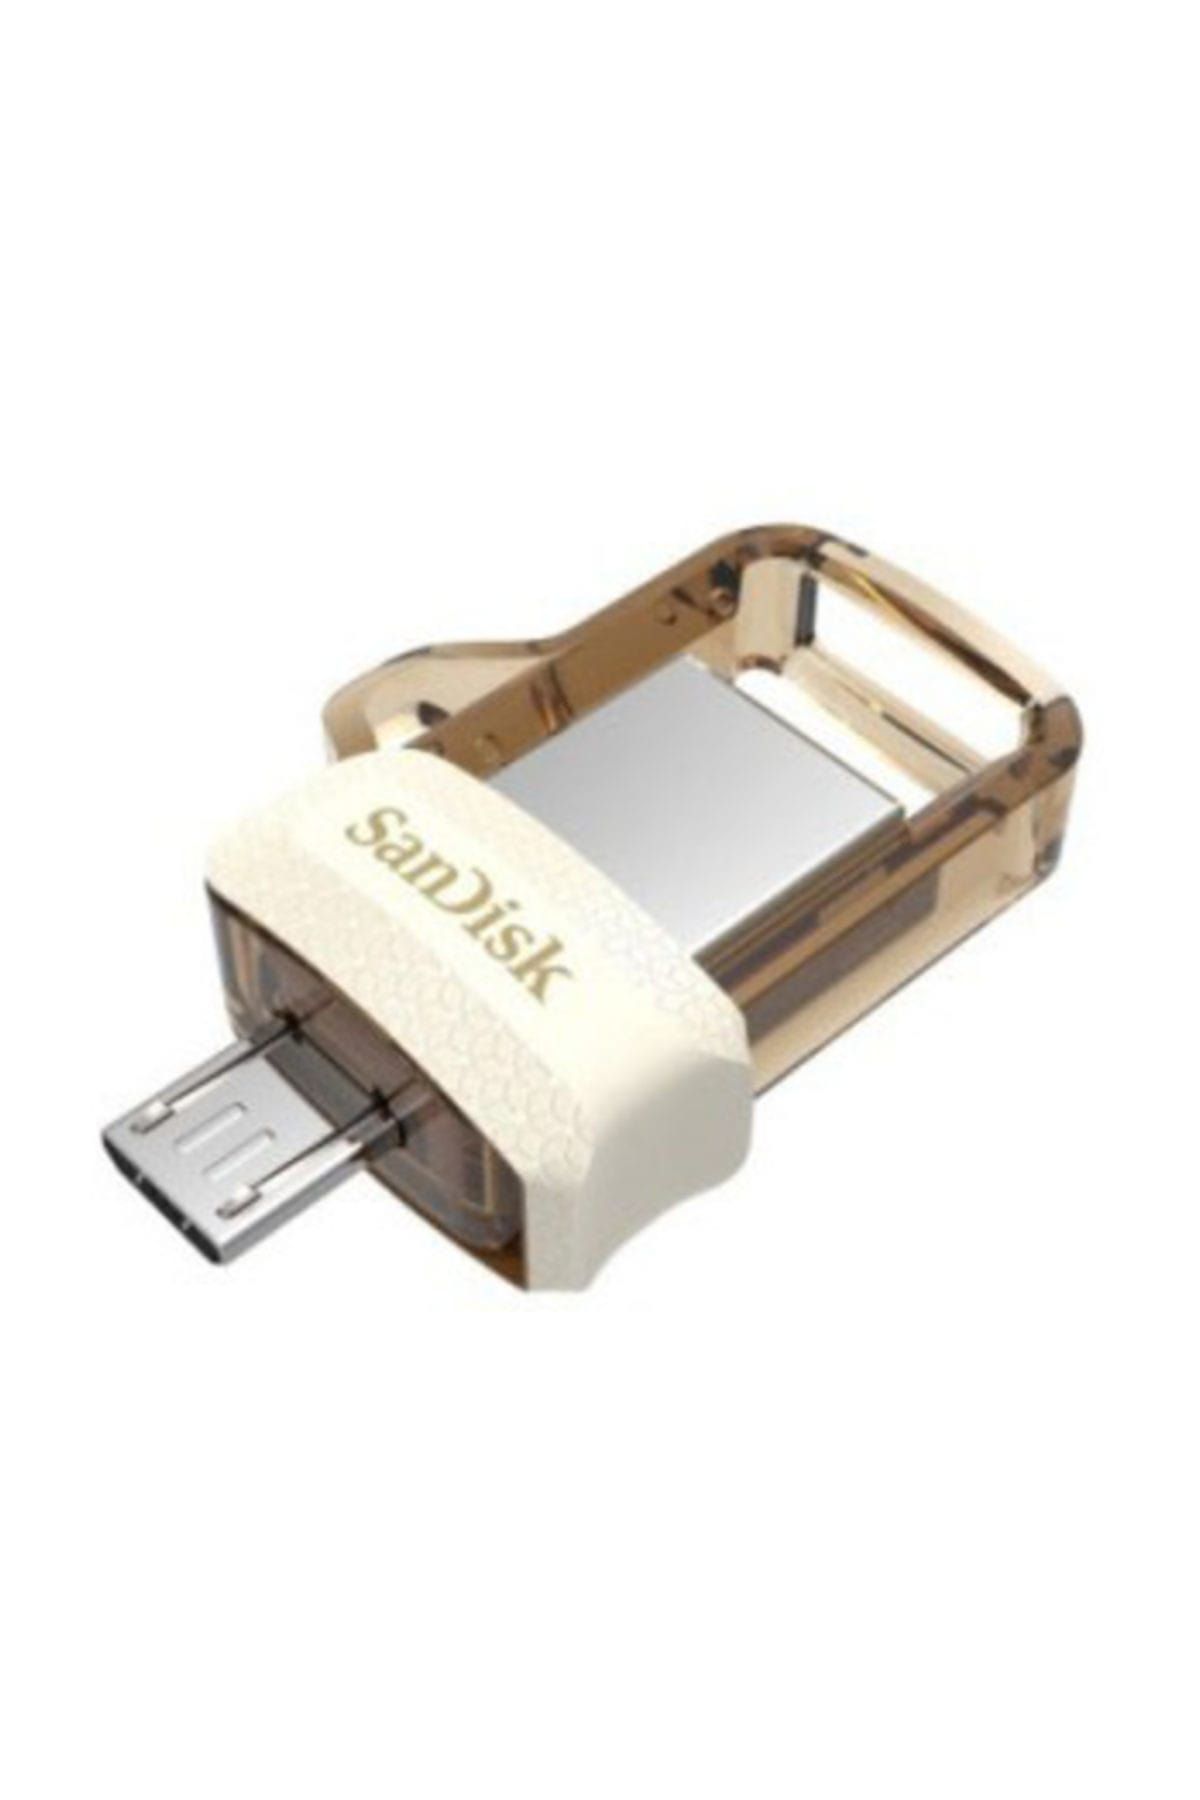 Sandisk Ultra Dual 32 GB USB Drive M3.0 OTG Bellek SDDD3-032G-G46W (GOLD)